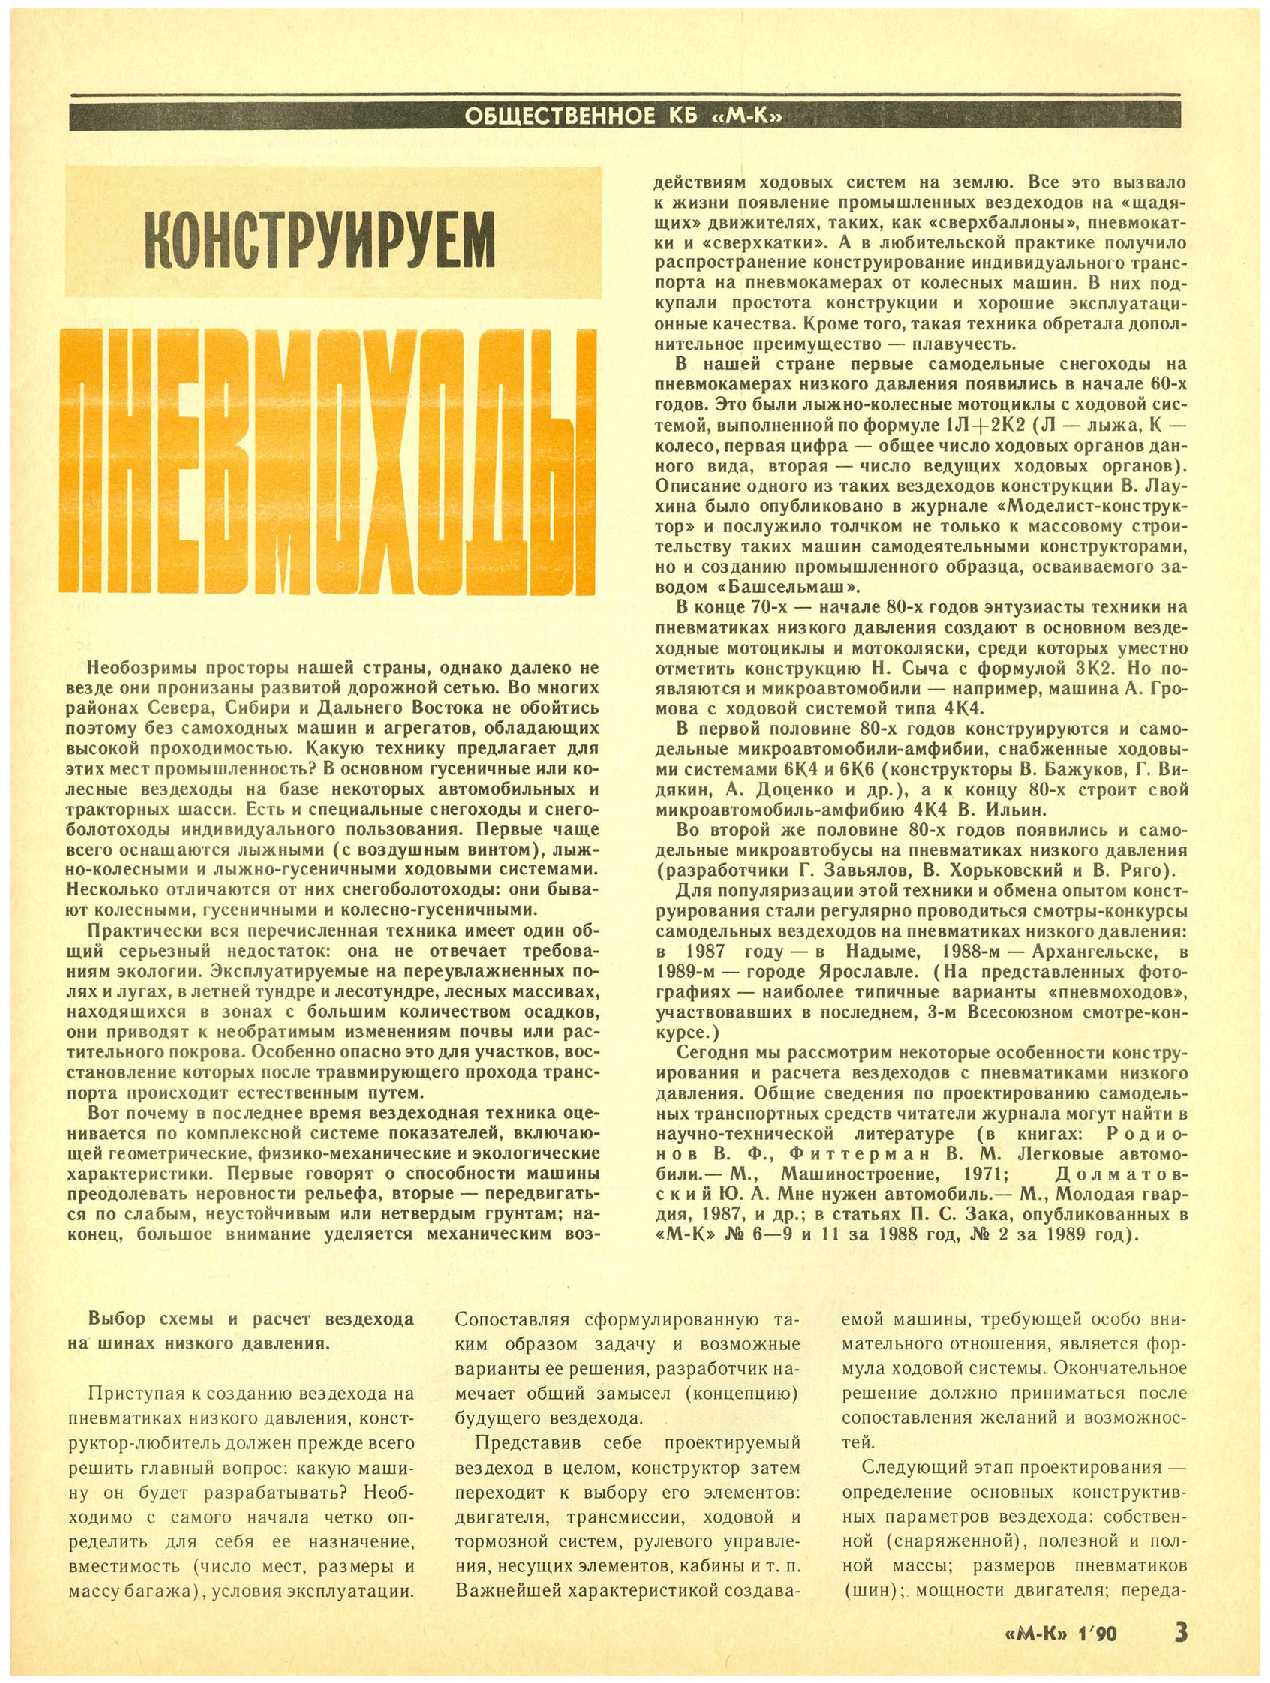 МК 1, 1990, 3 c.